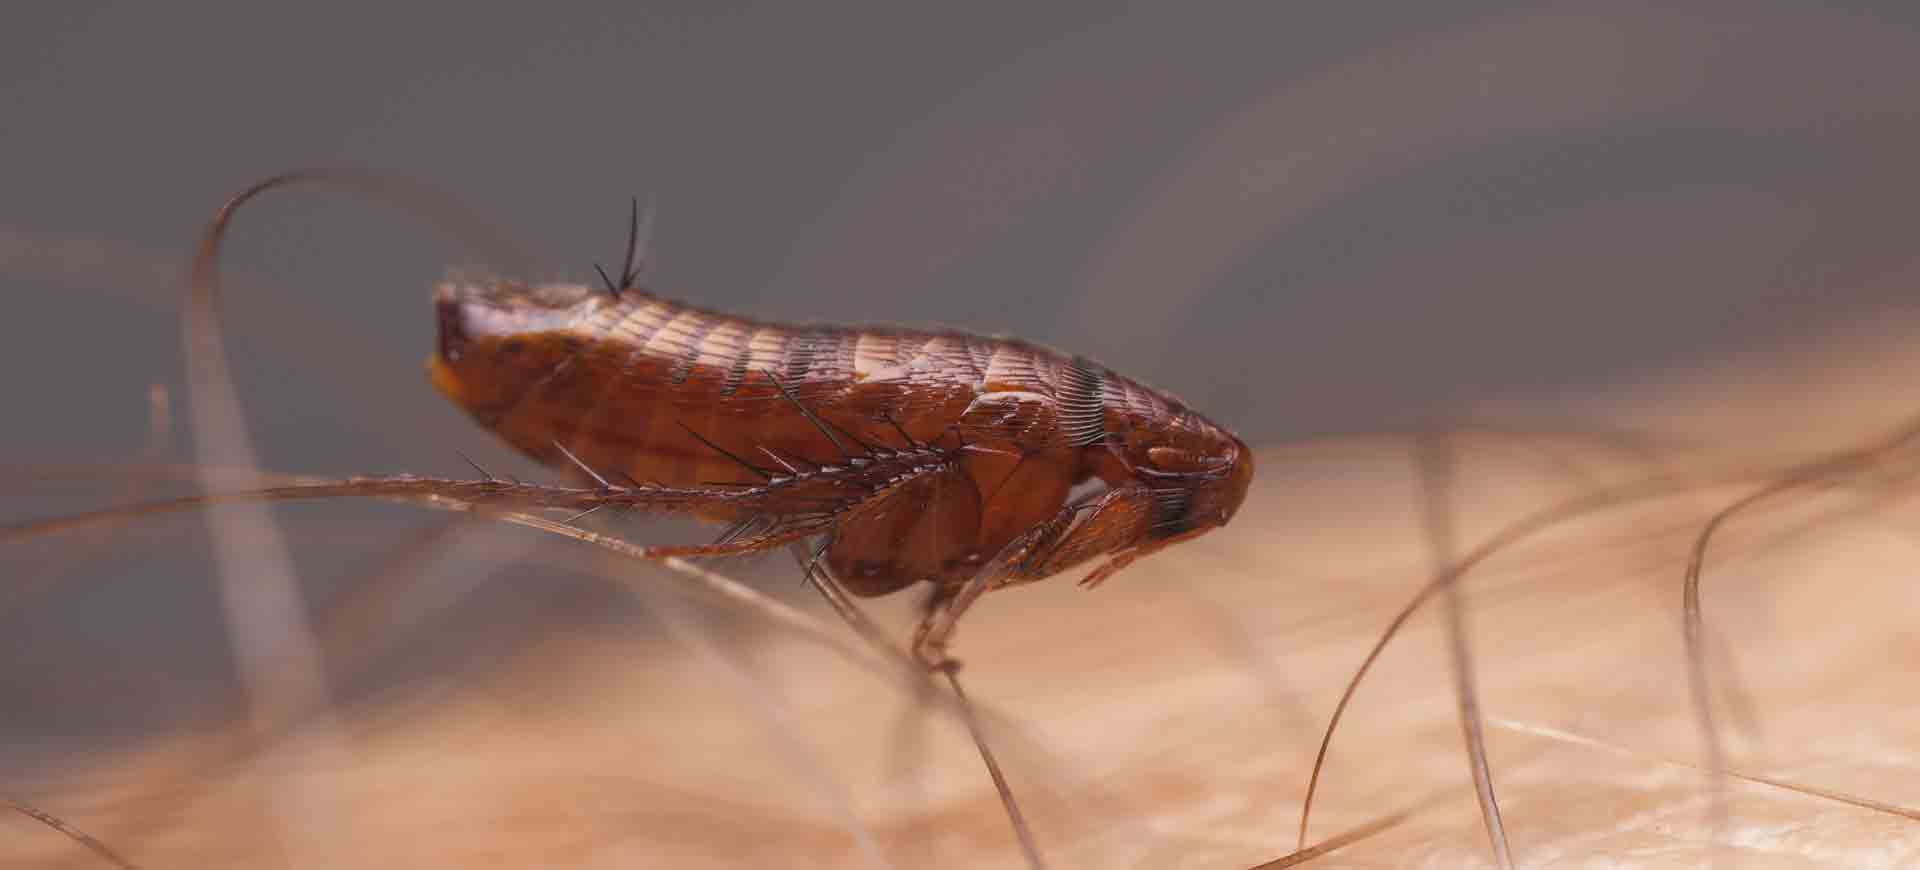 flea pest control clairemont